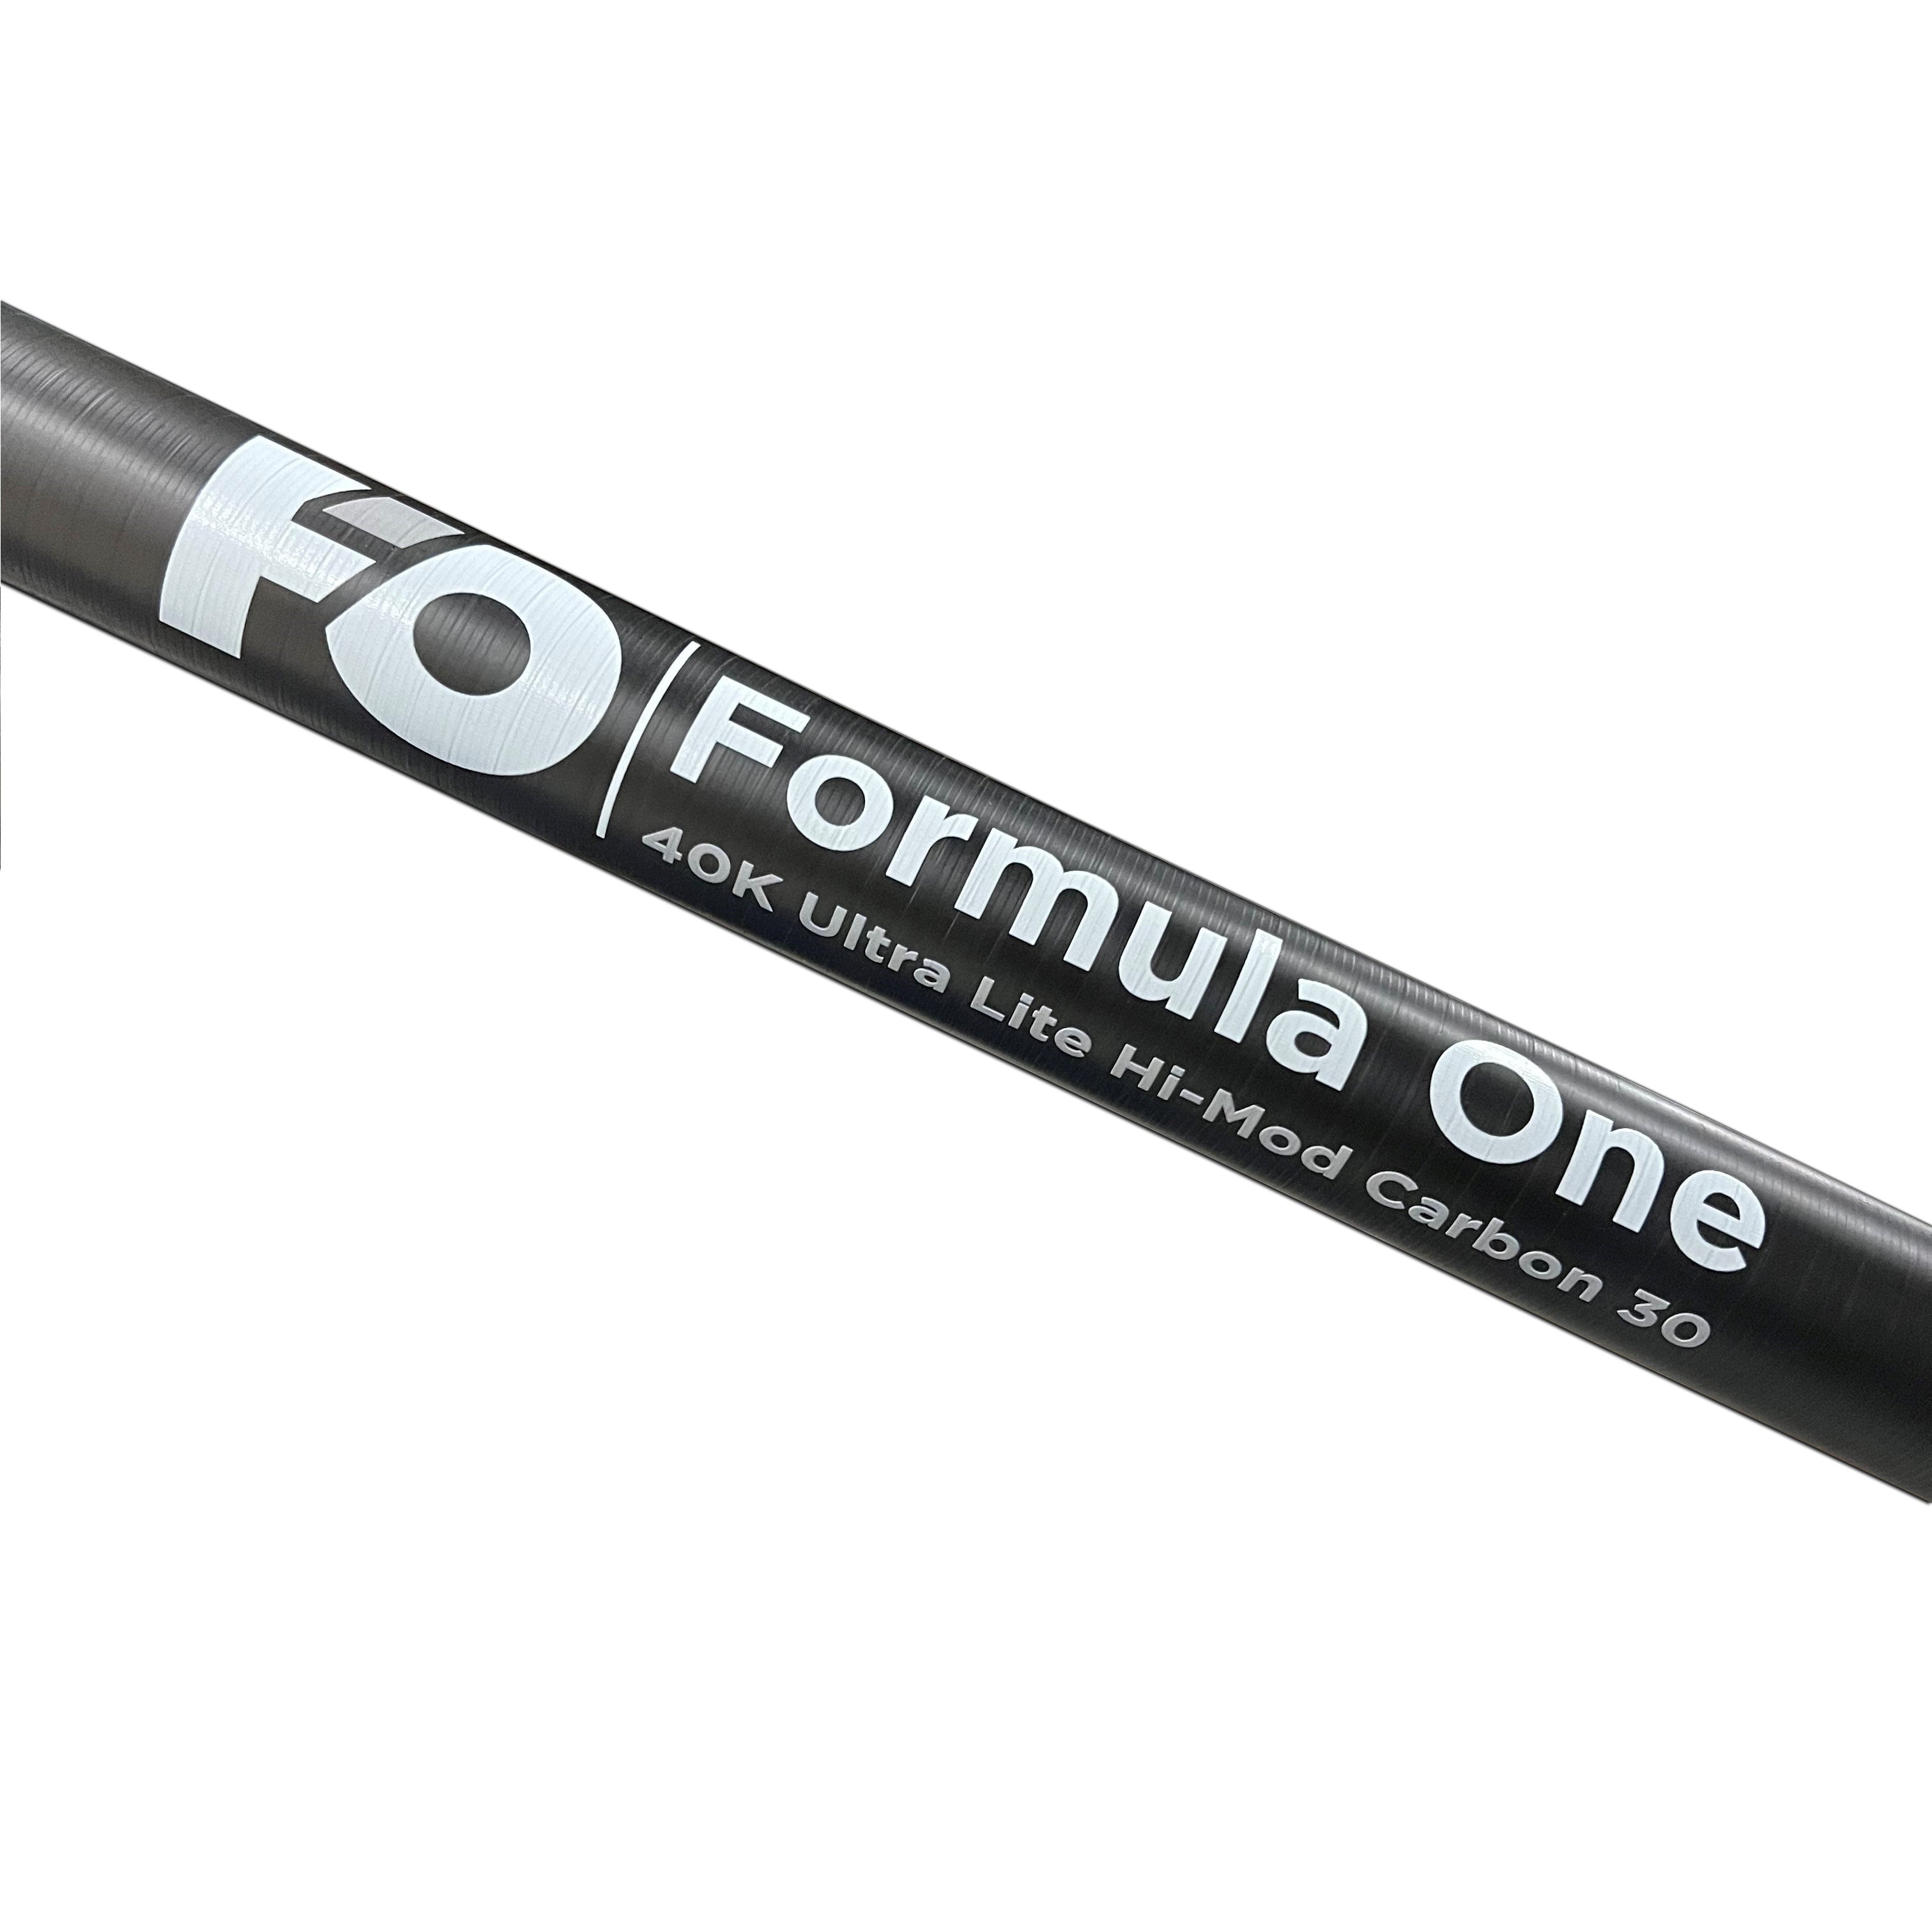 Formula One 40K ultra-lite hi-mod carbon